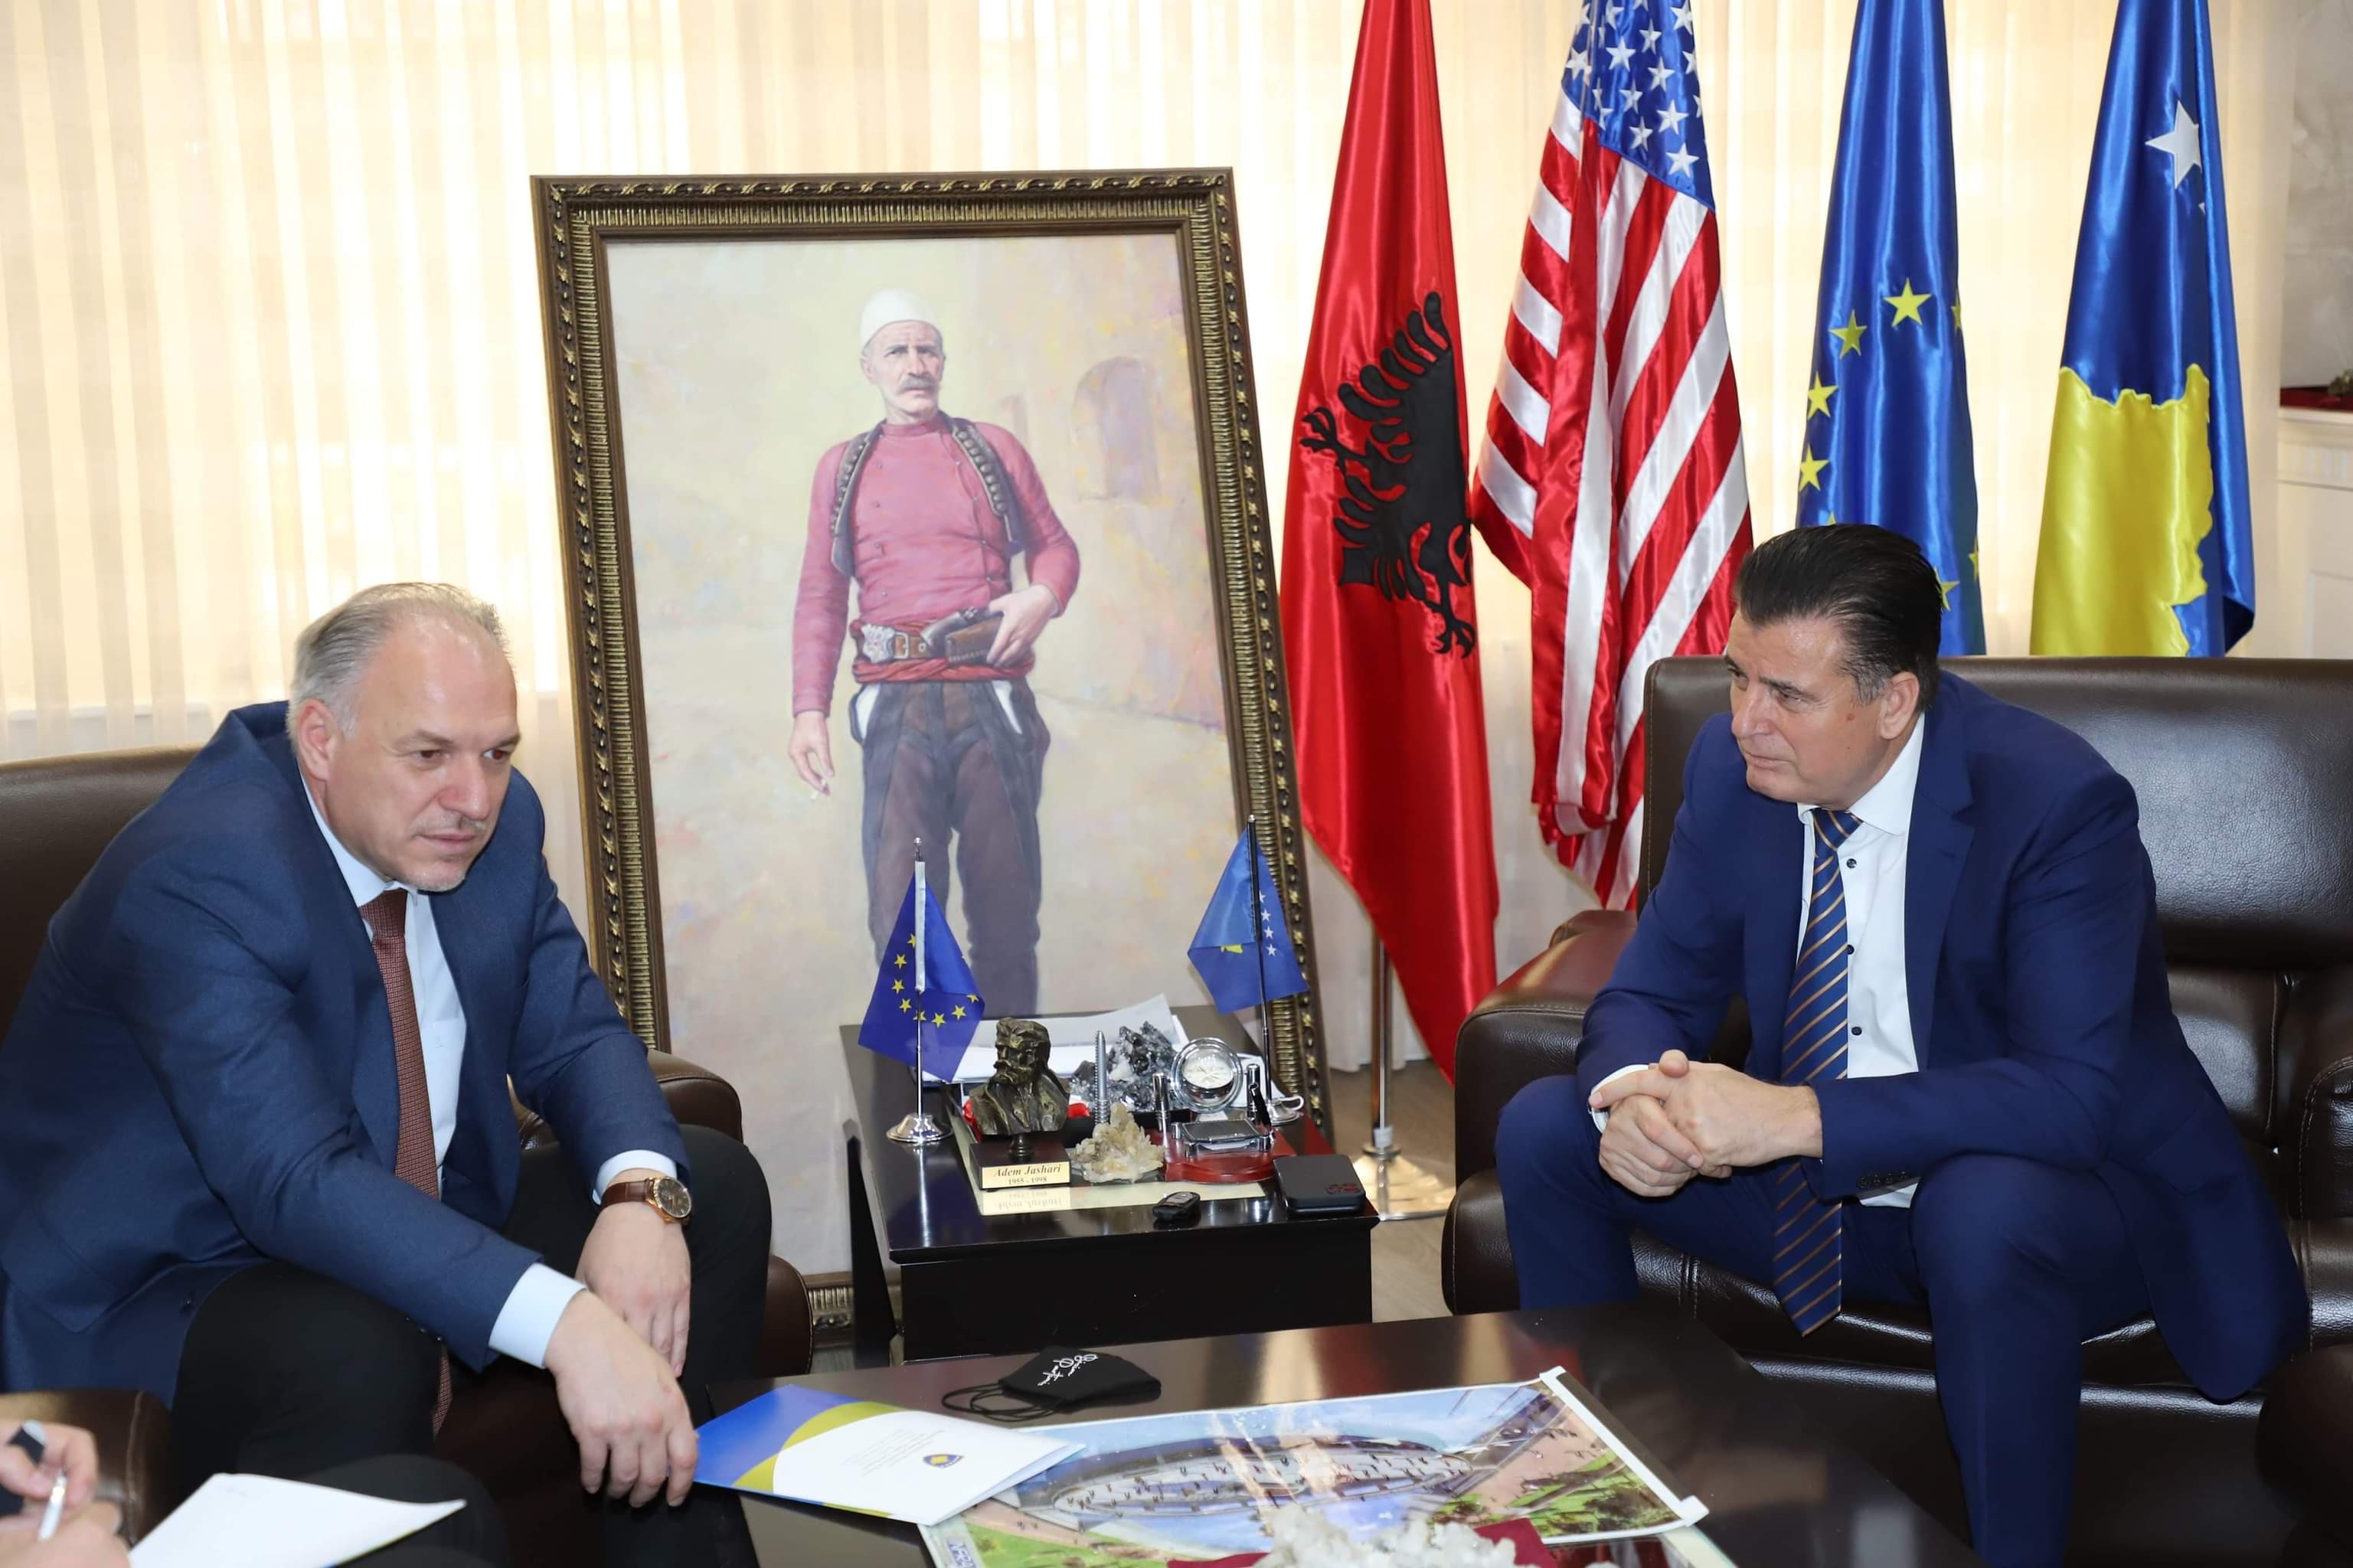 Ministri i Zhvillimit Rajonal z.Fikrim Damka vizitoi komunën e Mitrovices Jugore